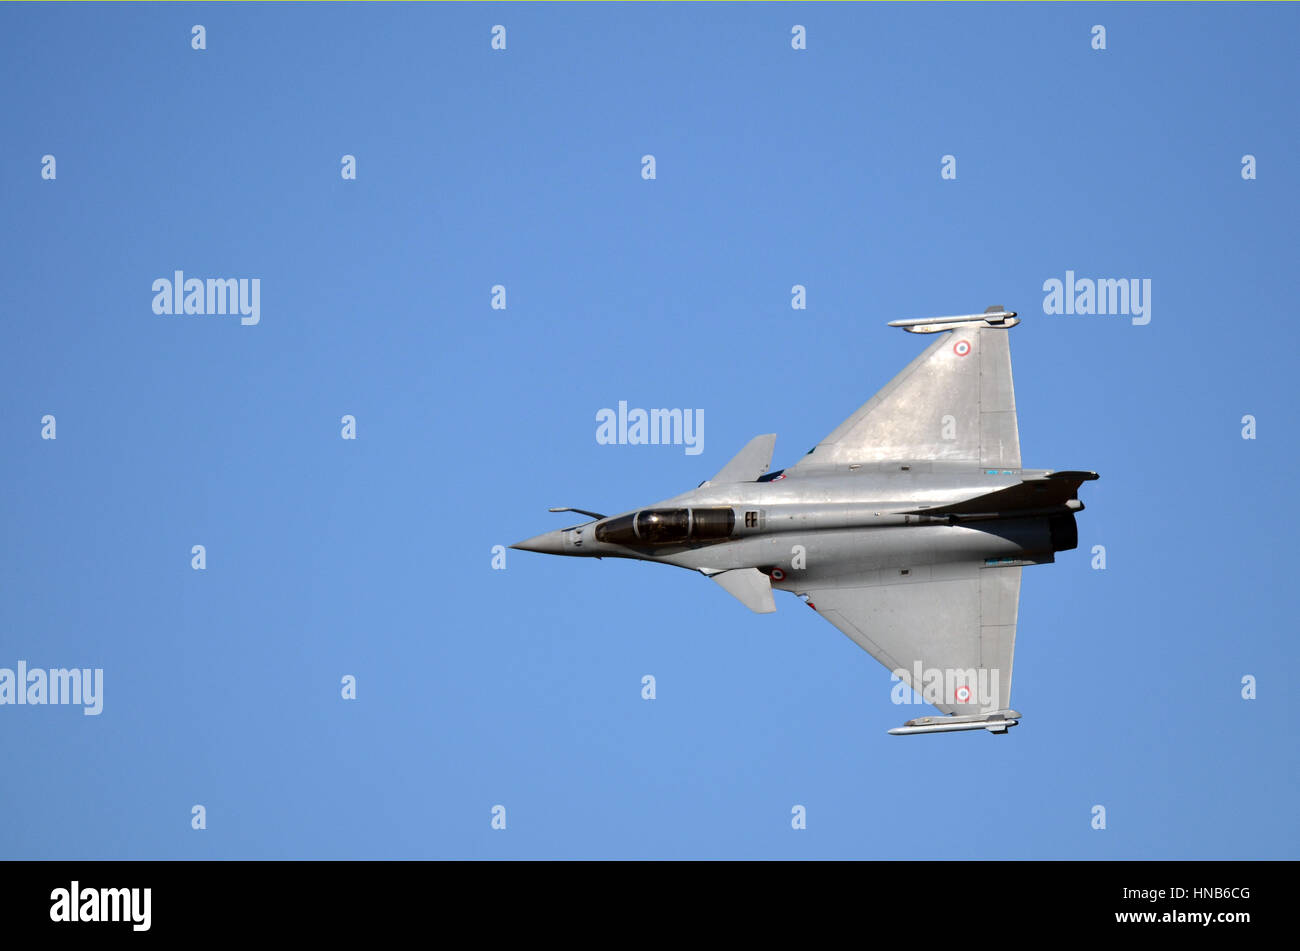 En demostración de vuelo de la Fuerza Aérea francesa en Toulouse Francazal caza Rafale. Foto de stock